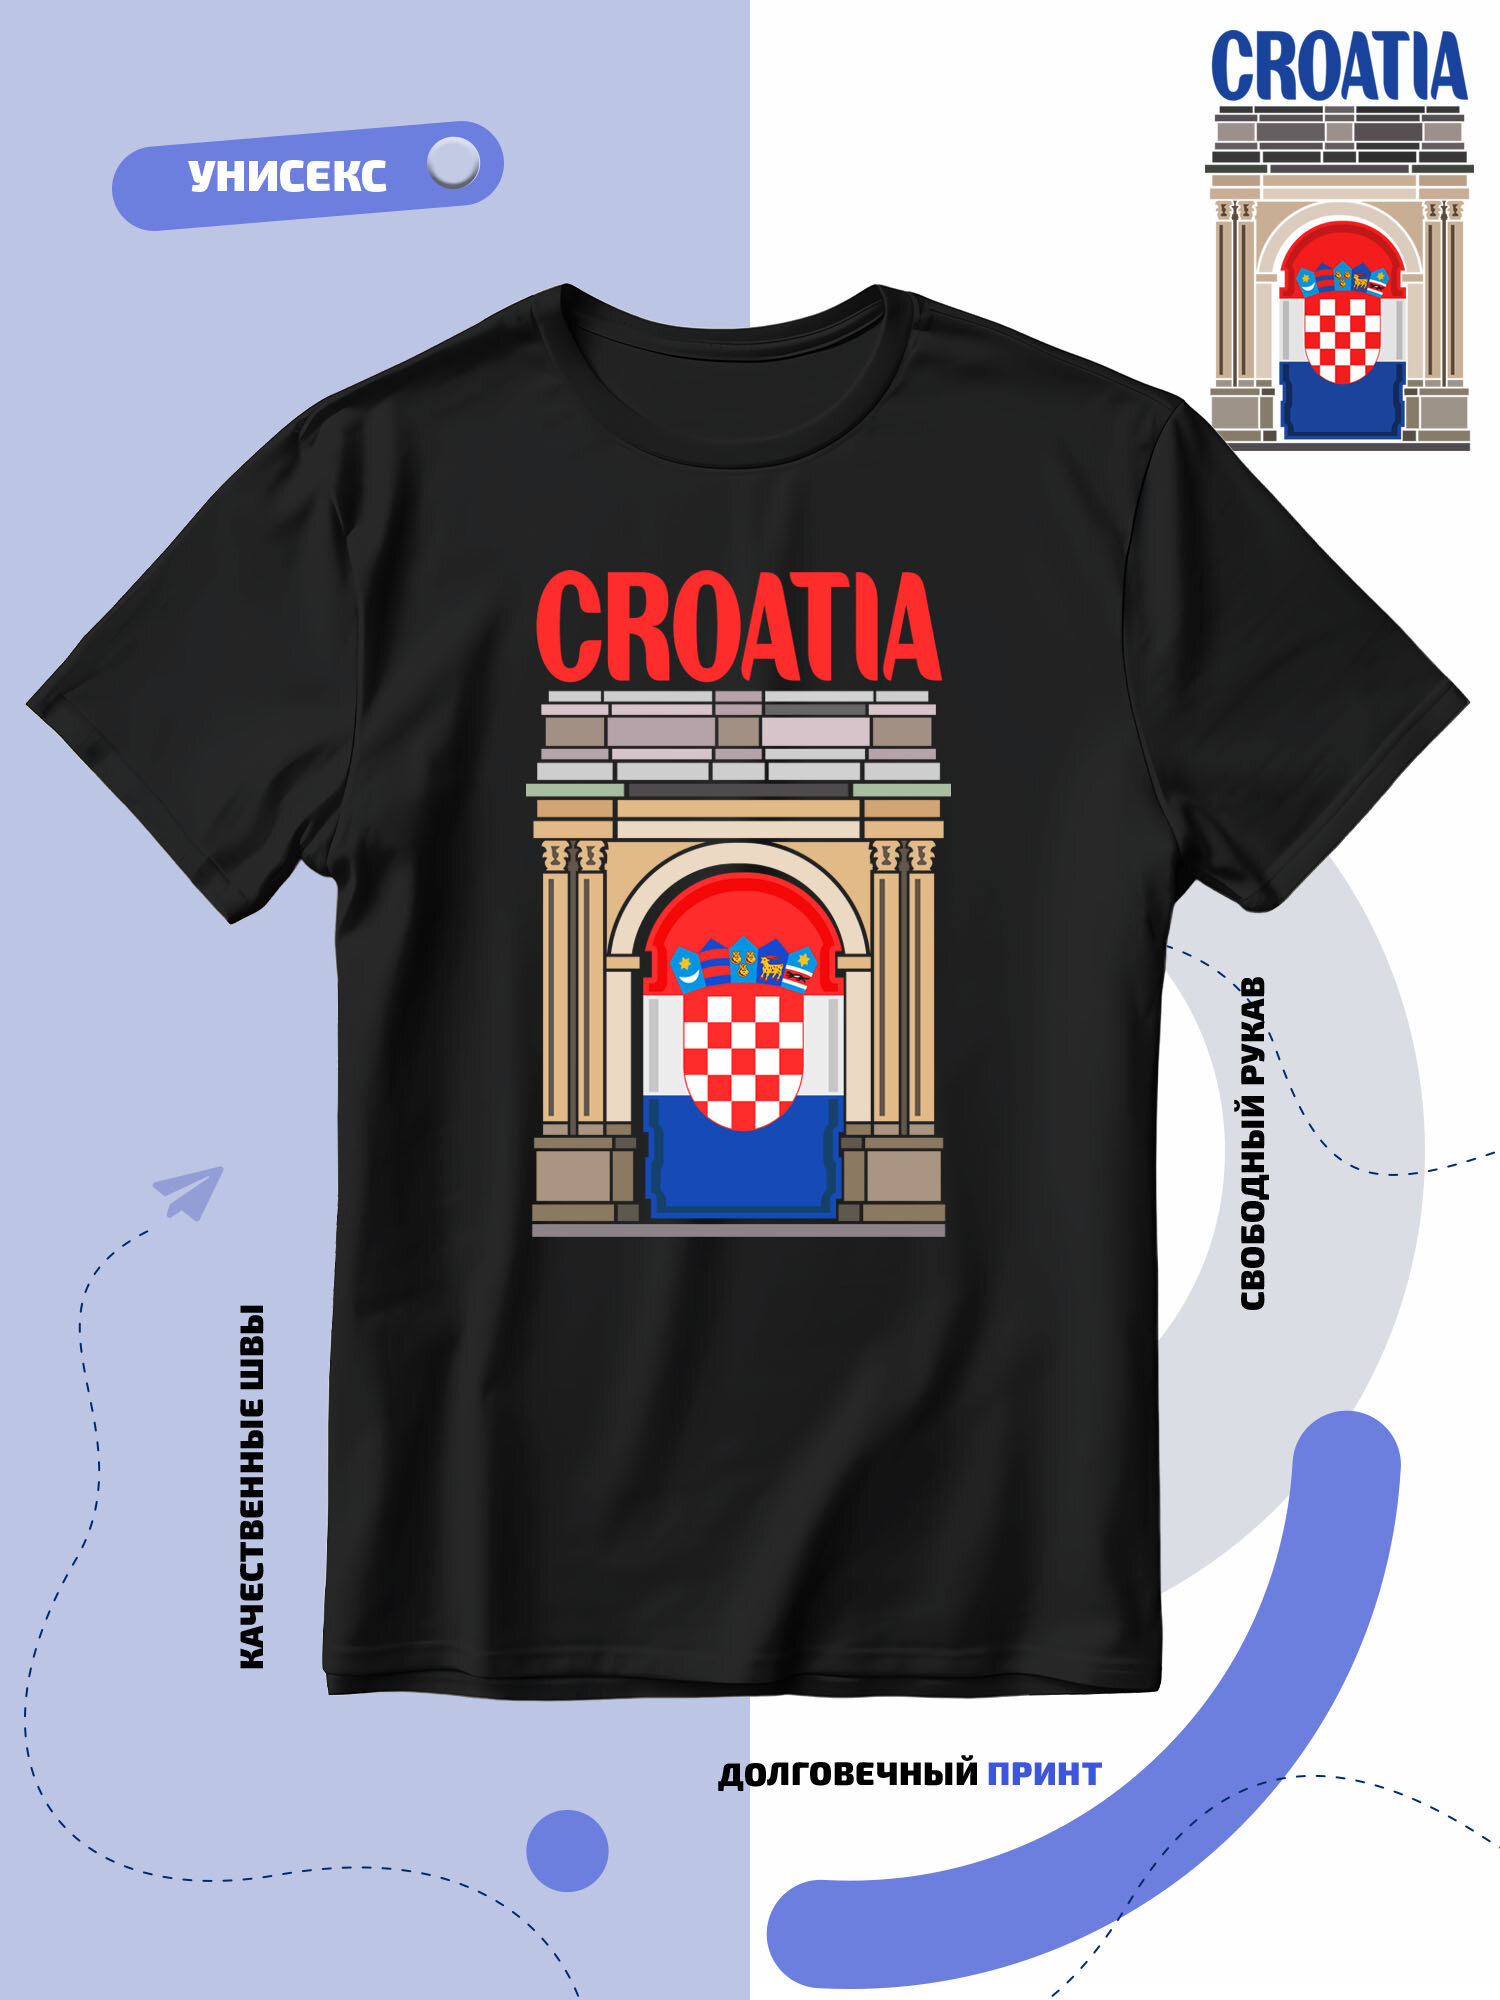 Футболка SMAIL-P флаг Хорватии-Croatia и достопримечательность